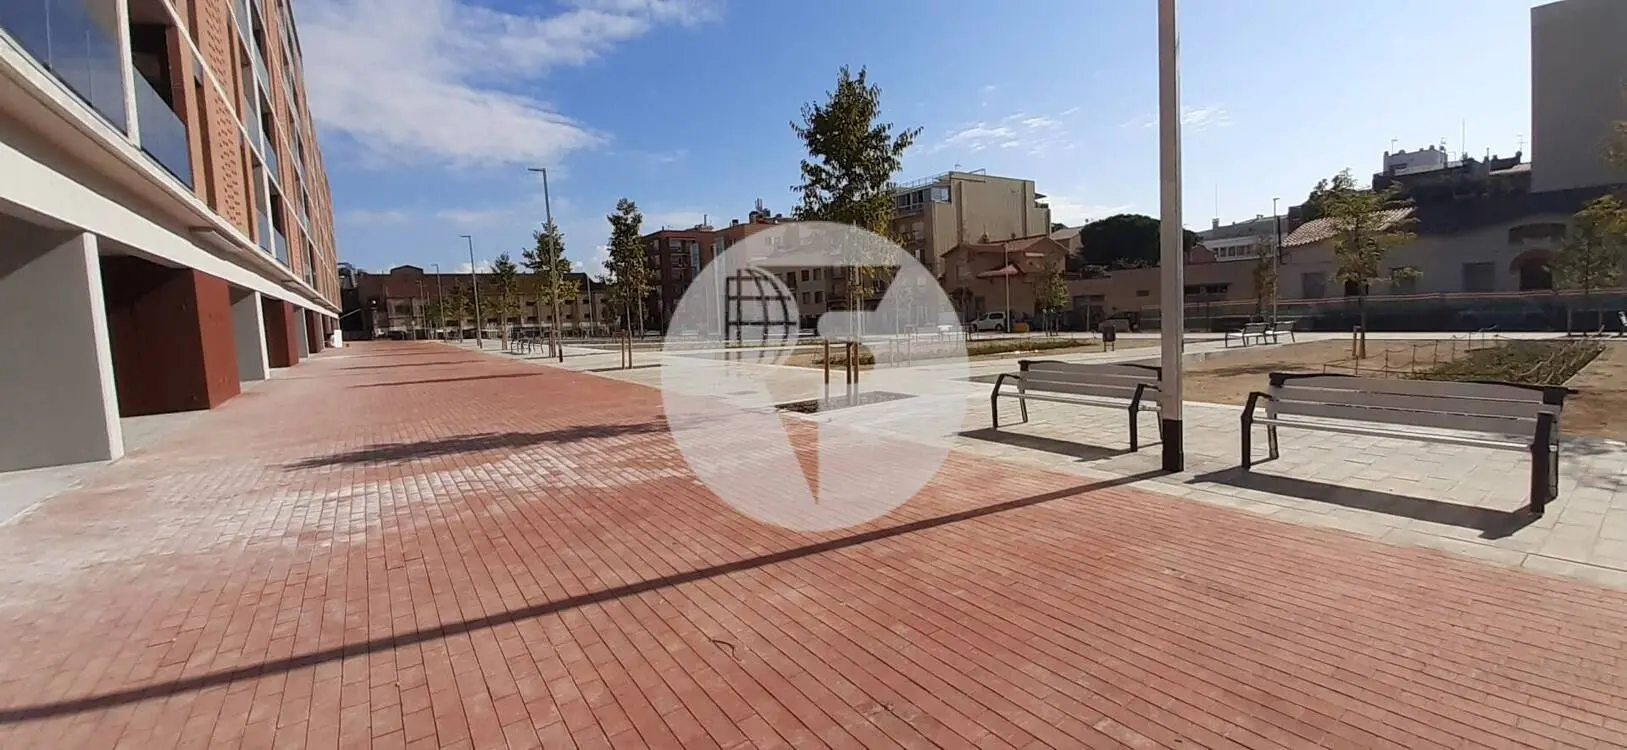 Local comercial d'Obra Nova a Sabadell IE-220757 2